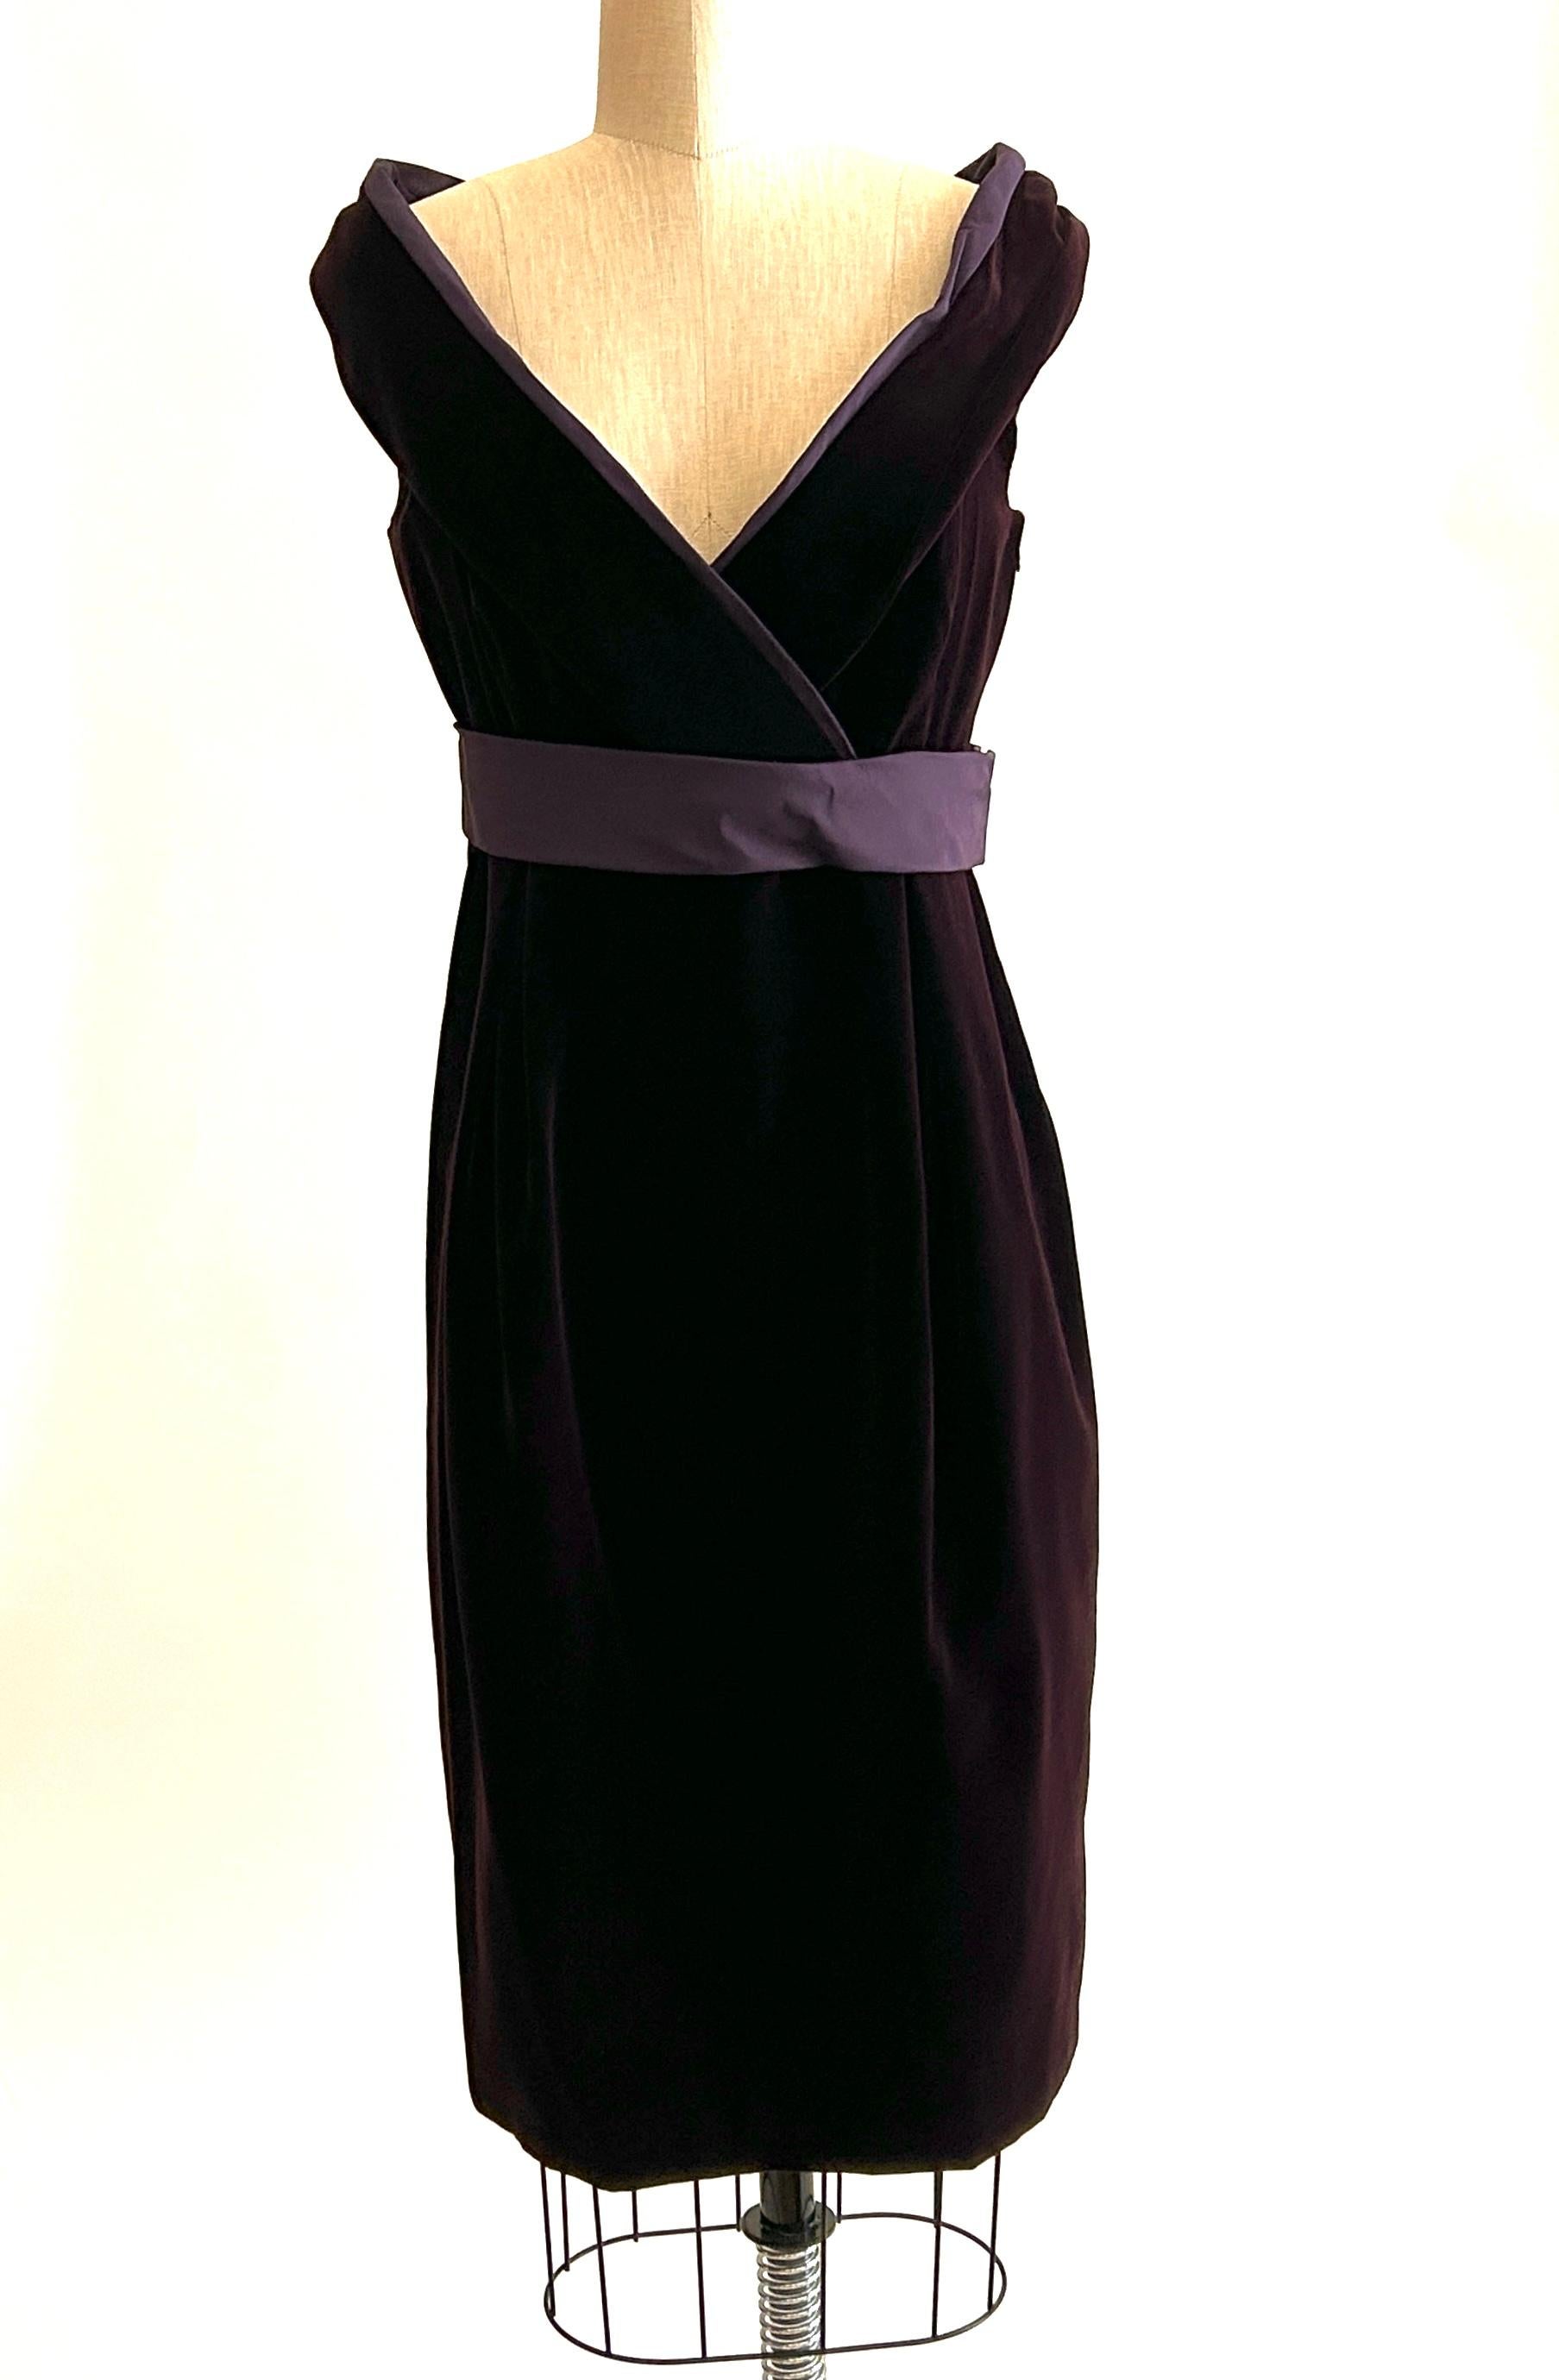 Alexander McQueen lila Samtkleid mit Portraitkragen aus den 2000er Jahren. Das Dekolleté ist leicht schulterfrei und hat einen skulpturalen Drapierungseffekt mit einem lilafarbenen Grosgrain-Besatz an der Innenseite. Zwei Falten an der Vorderseite